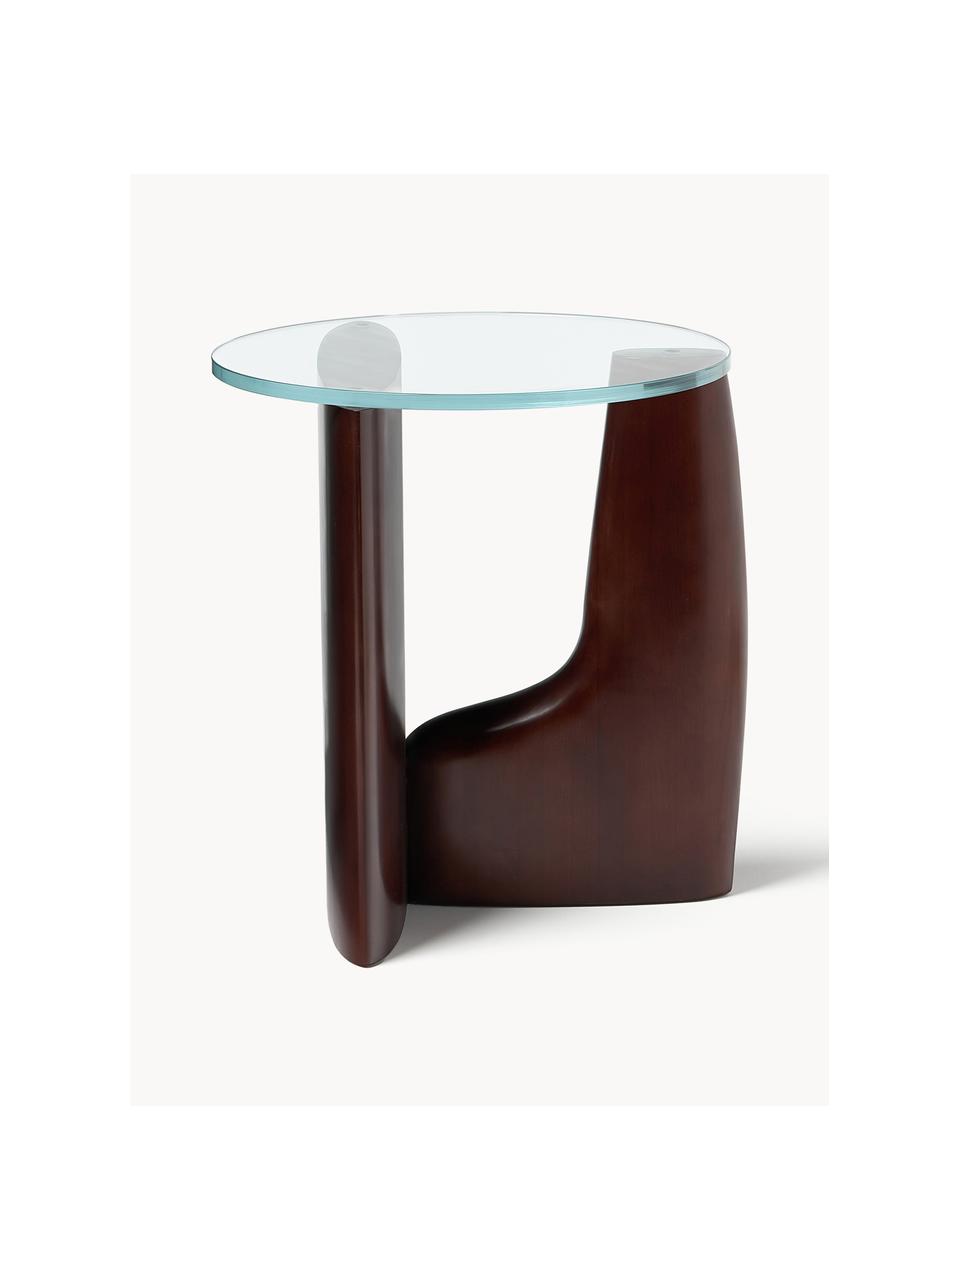 Kulatý dřevěný odkládací stolek Miya, Topol, tmavě hnědě lakovaný, Ø 53 cm, V 55 cm